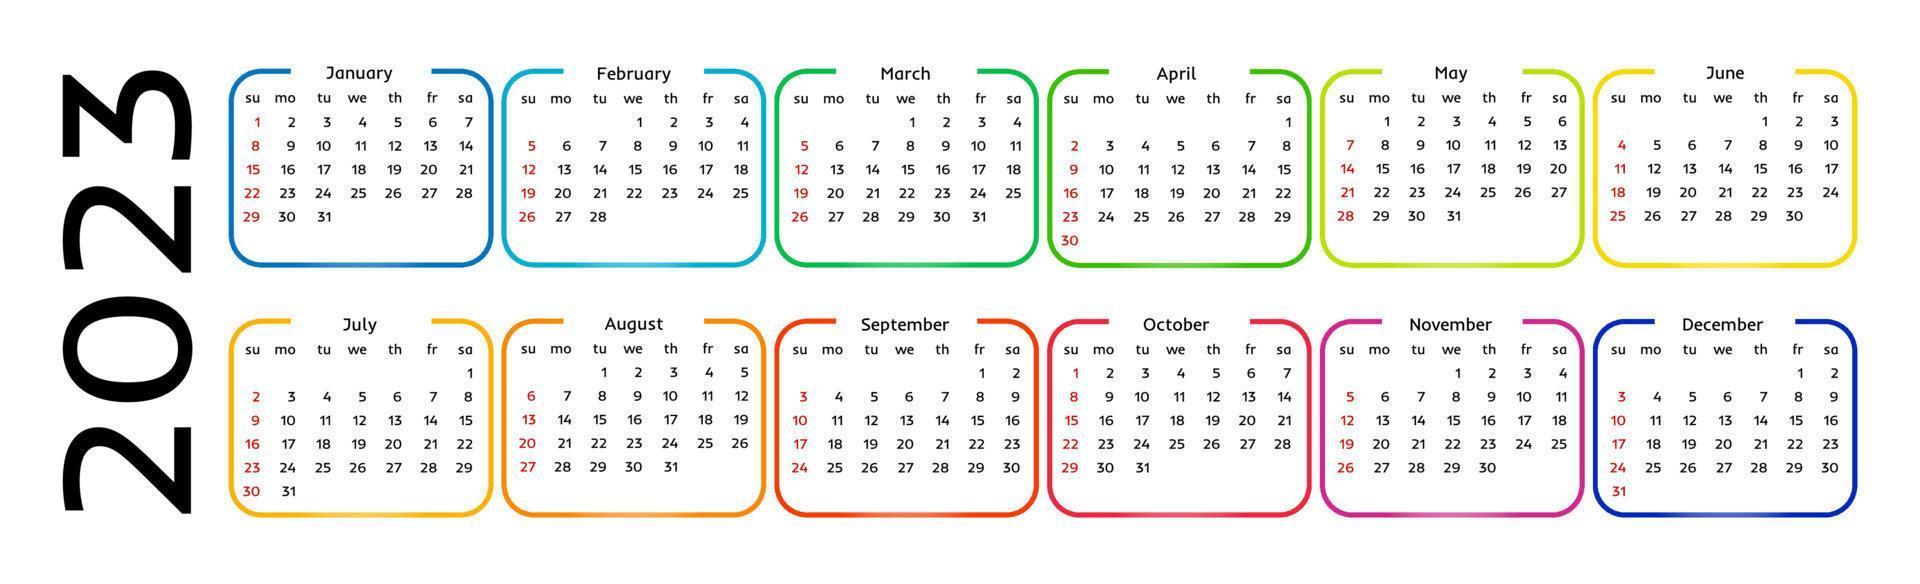 calendrier horizontal pour 2023 isolé sur fond blanc. du dimanche au lundi, modèle d'entreprise. illustration vectorielle vecteur